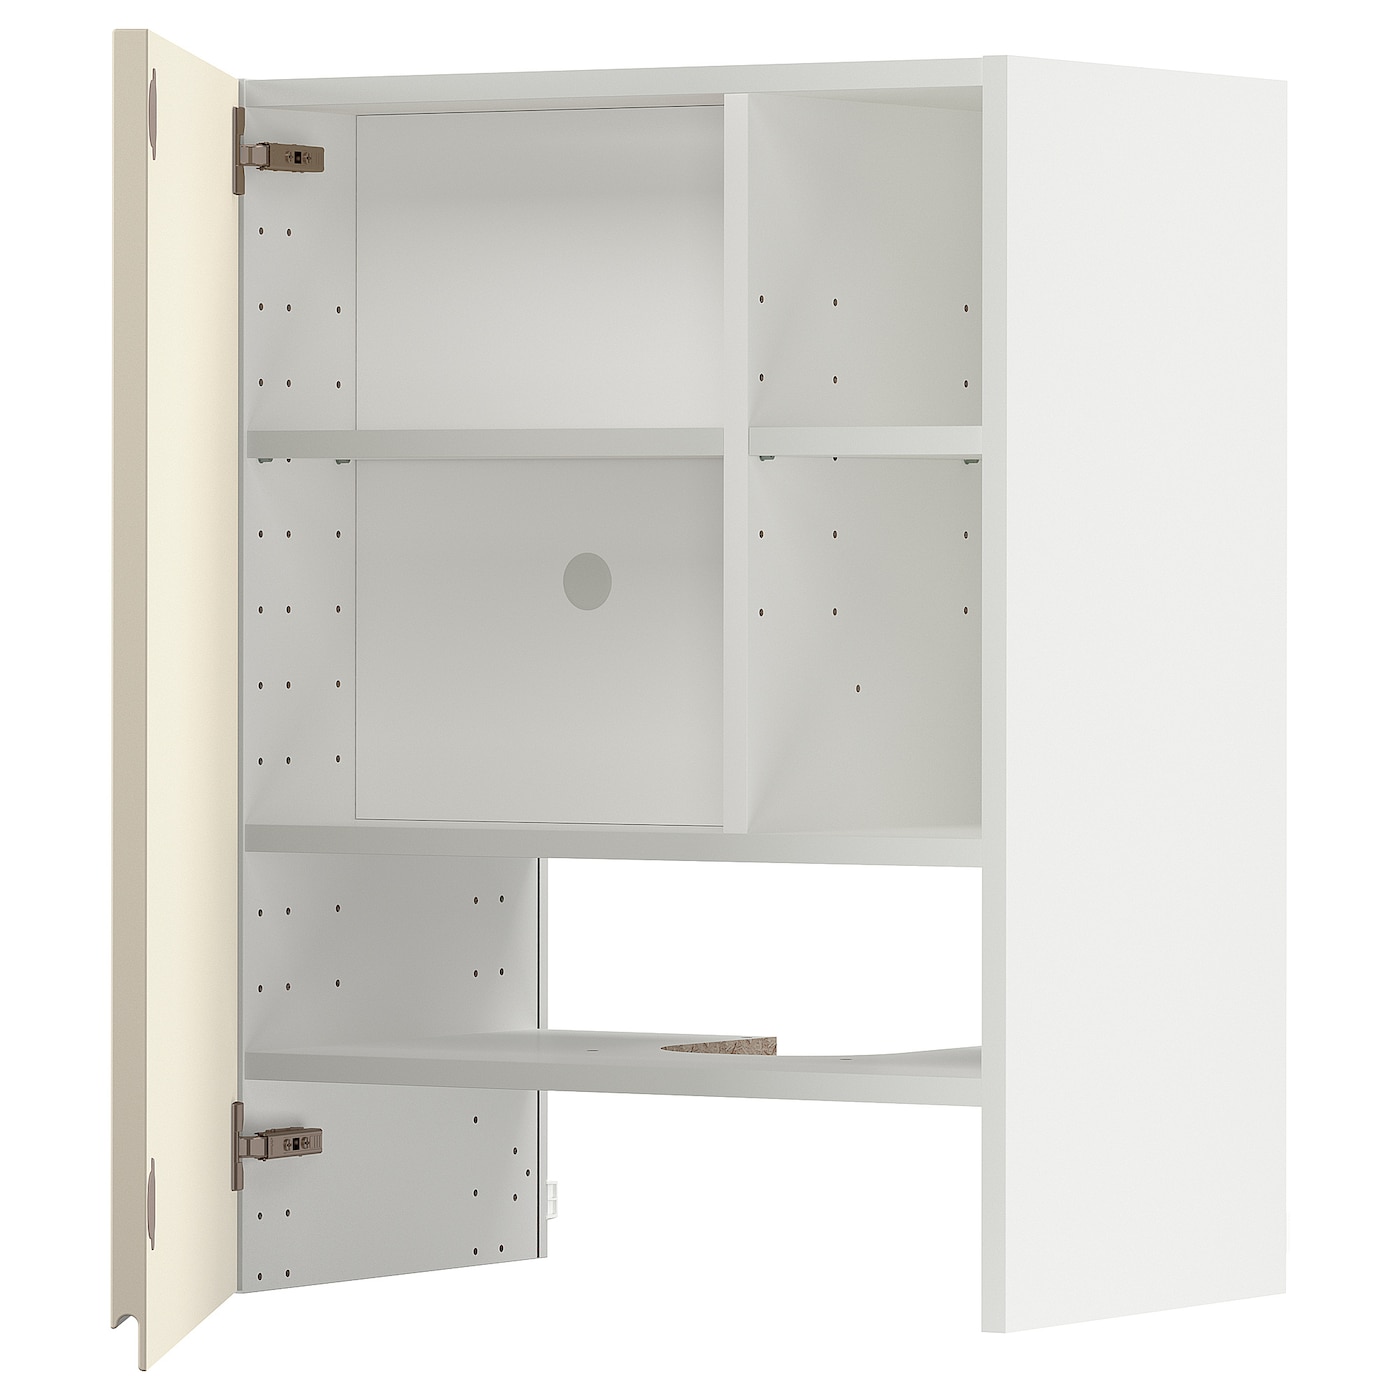 Навесной шкаф - METOD IKEA/ МЕТОД ИКЕА, 60х60 см, белый/бежевый